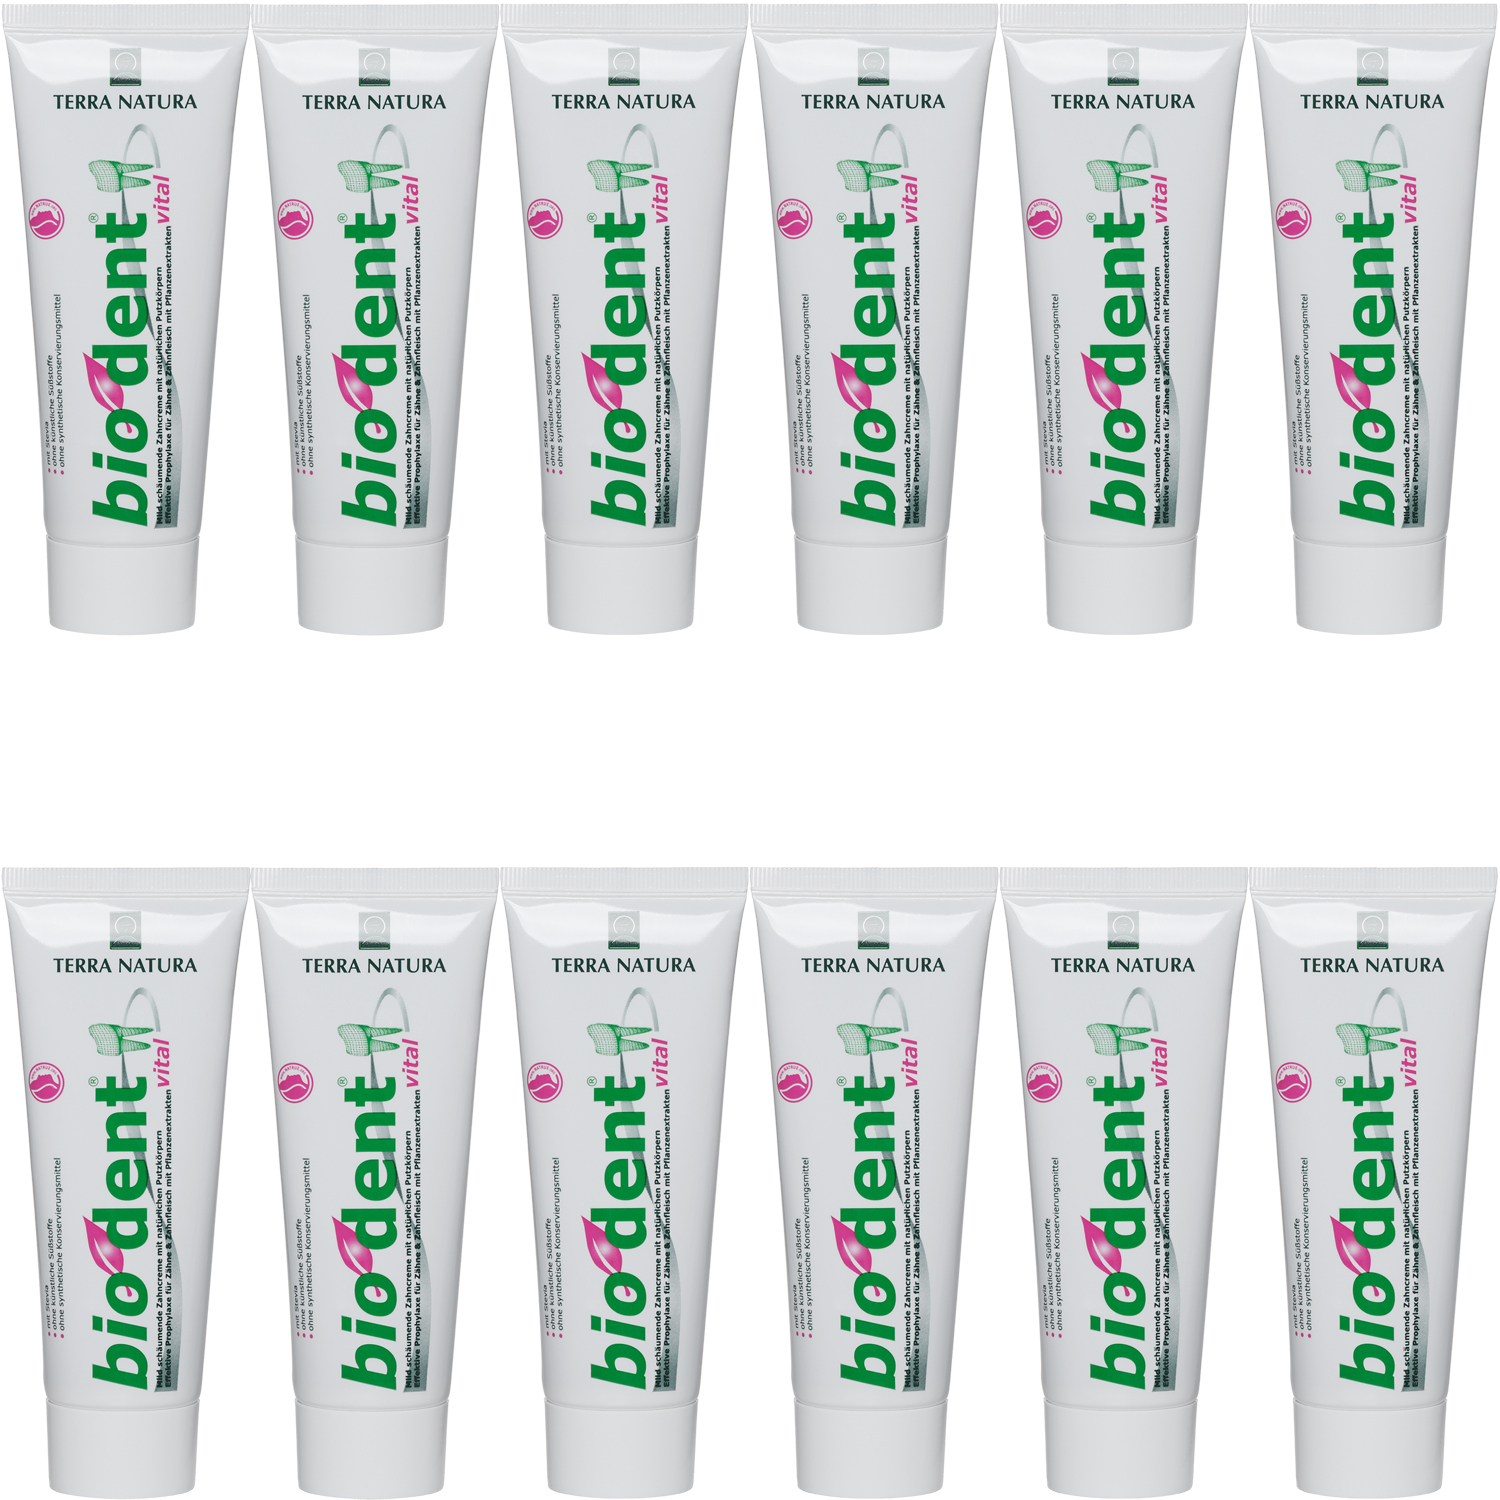 Tandpasta zonder fluoride online kopen tegen een geweldige prijs